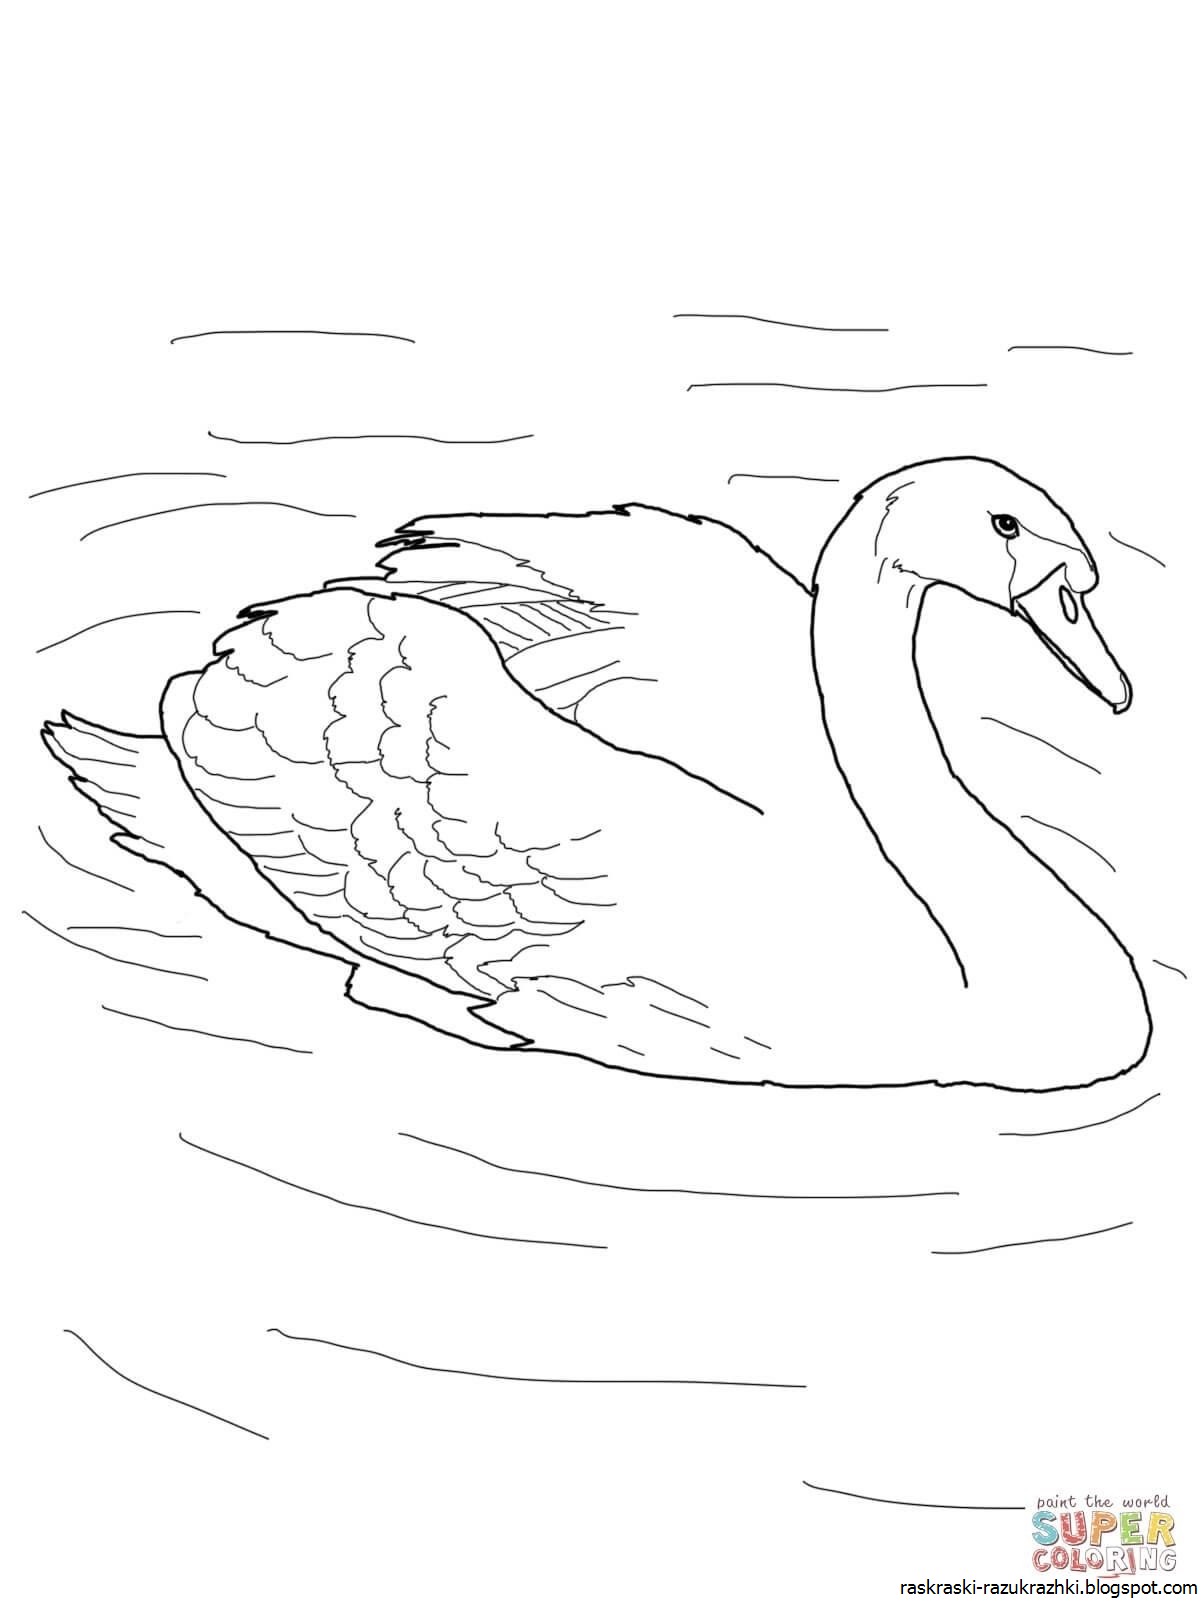 Распечатать картинку лебедь. Лебедь кликун раскраска. Лебедь шипун раскраска. Лебедь раскраска для детей. Лебедь рисунок для детей.